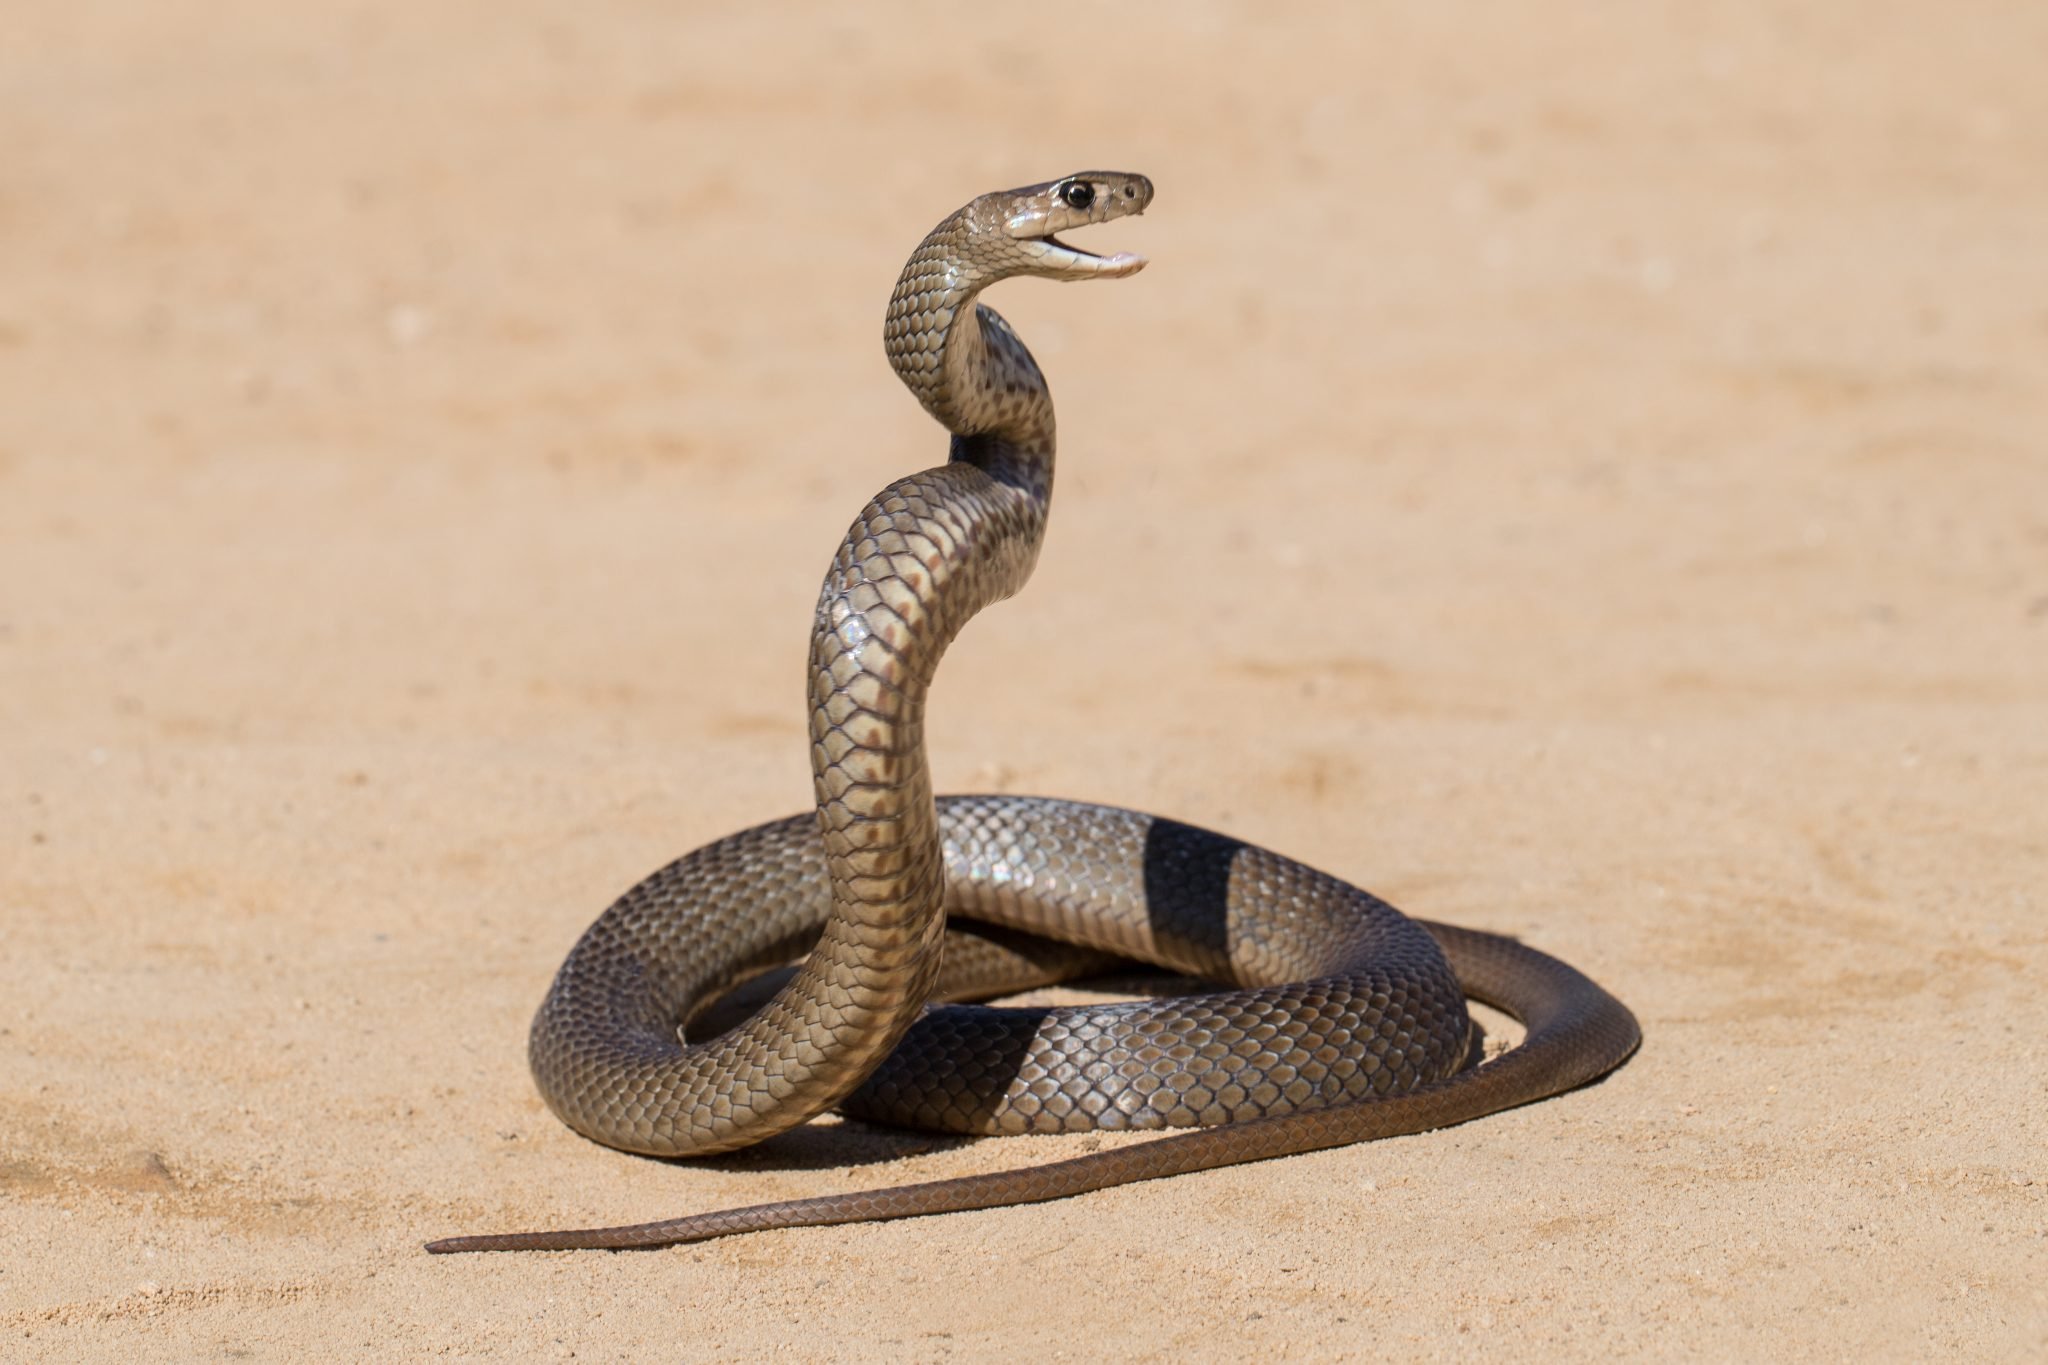 Cobra Ouro Serpente - Imagens grátis no Pixabay - Pixabay